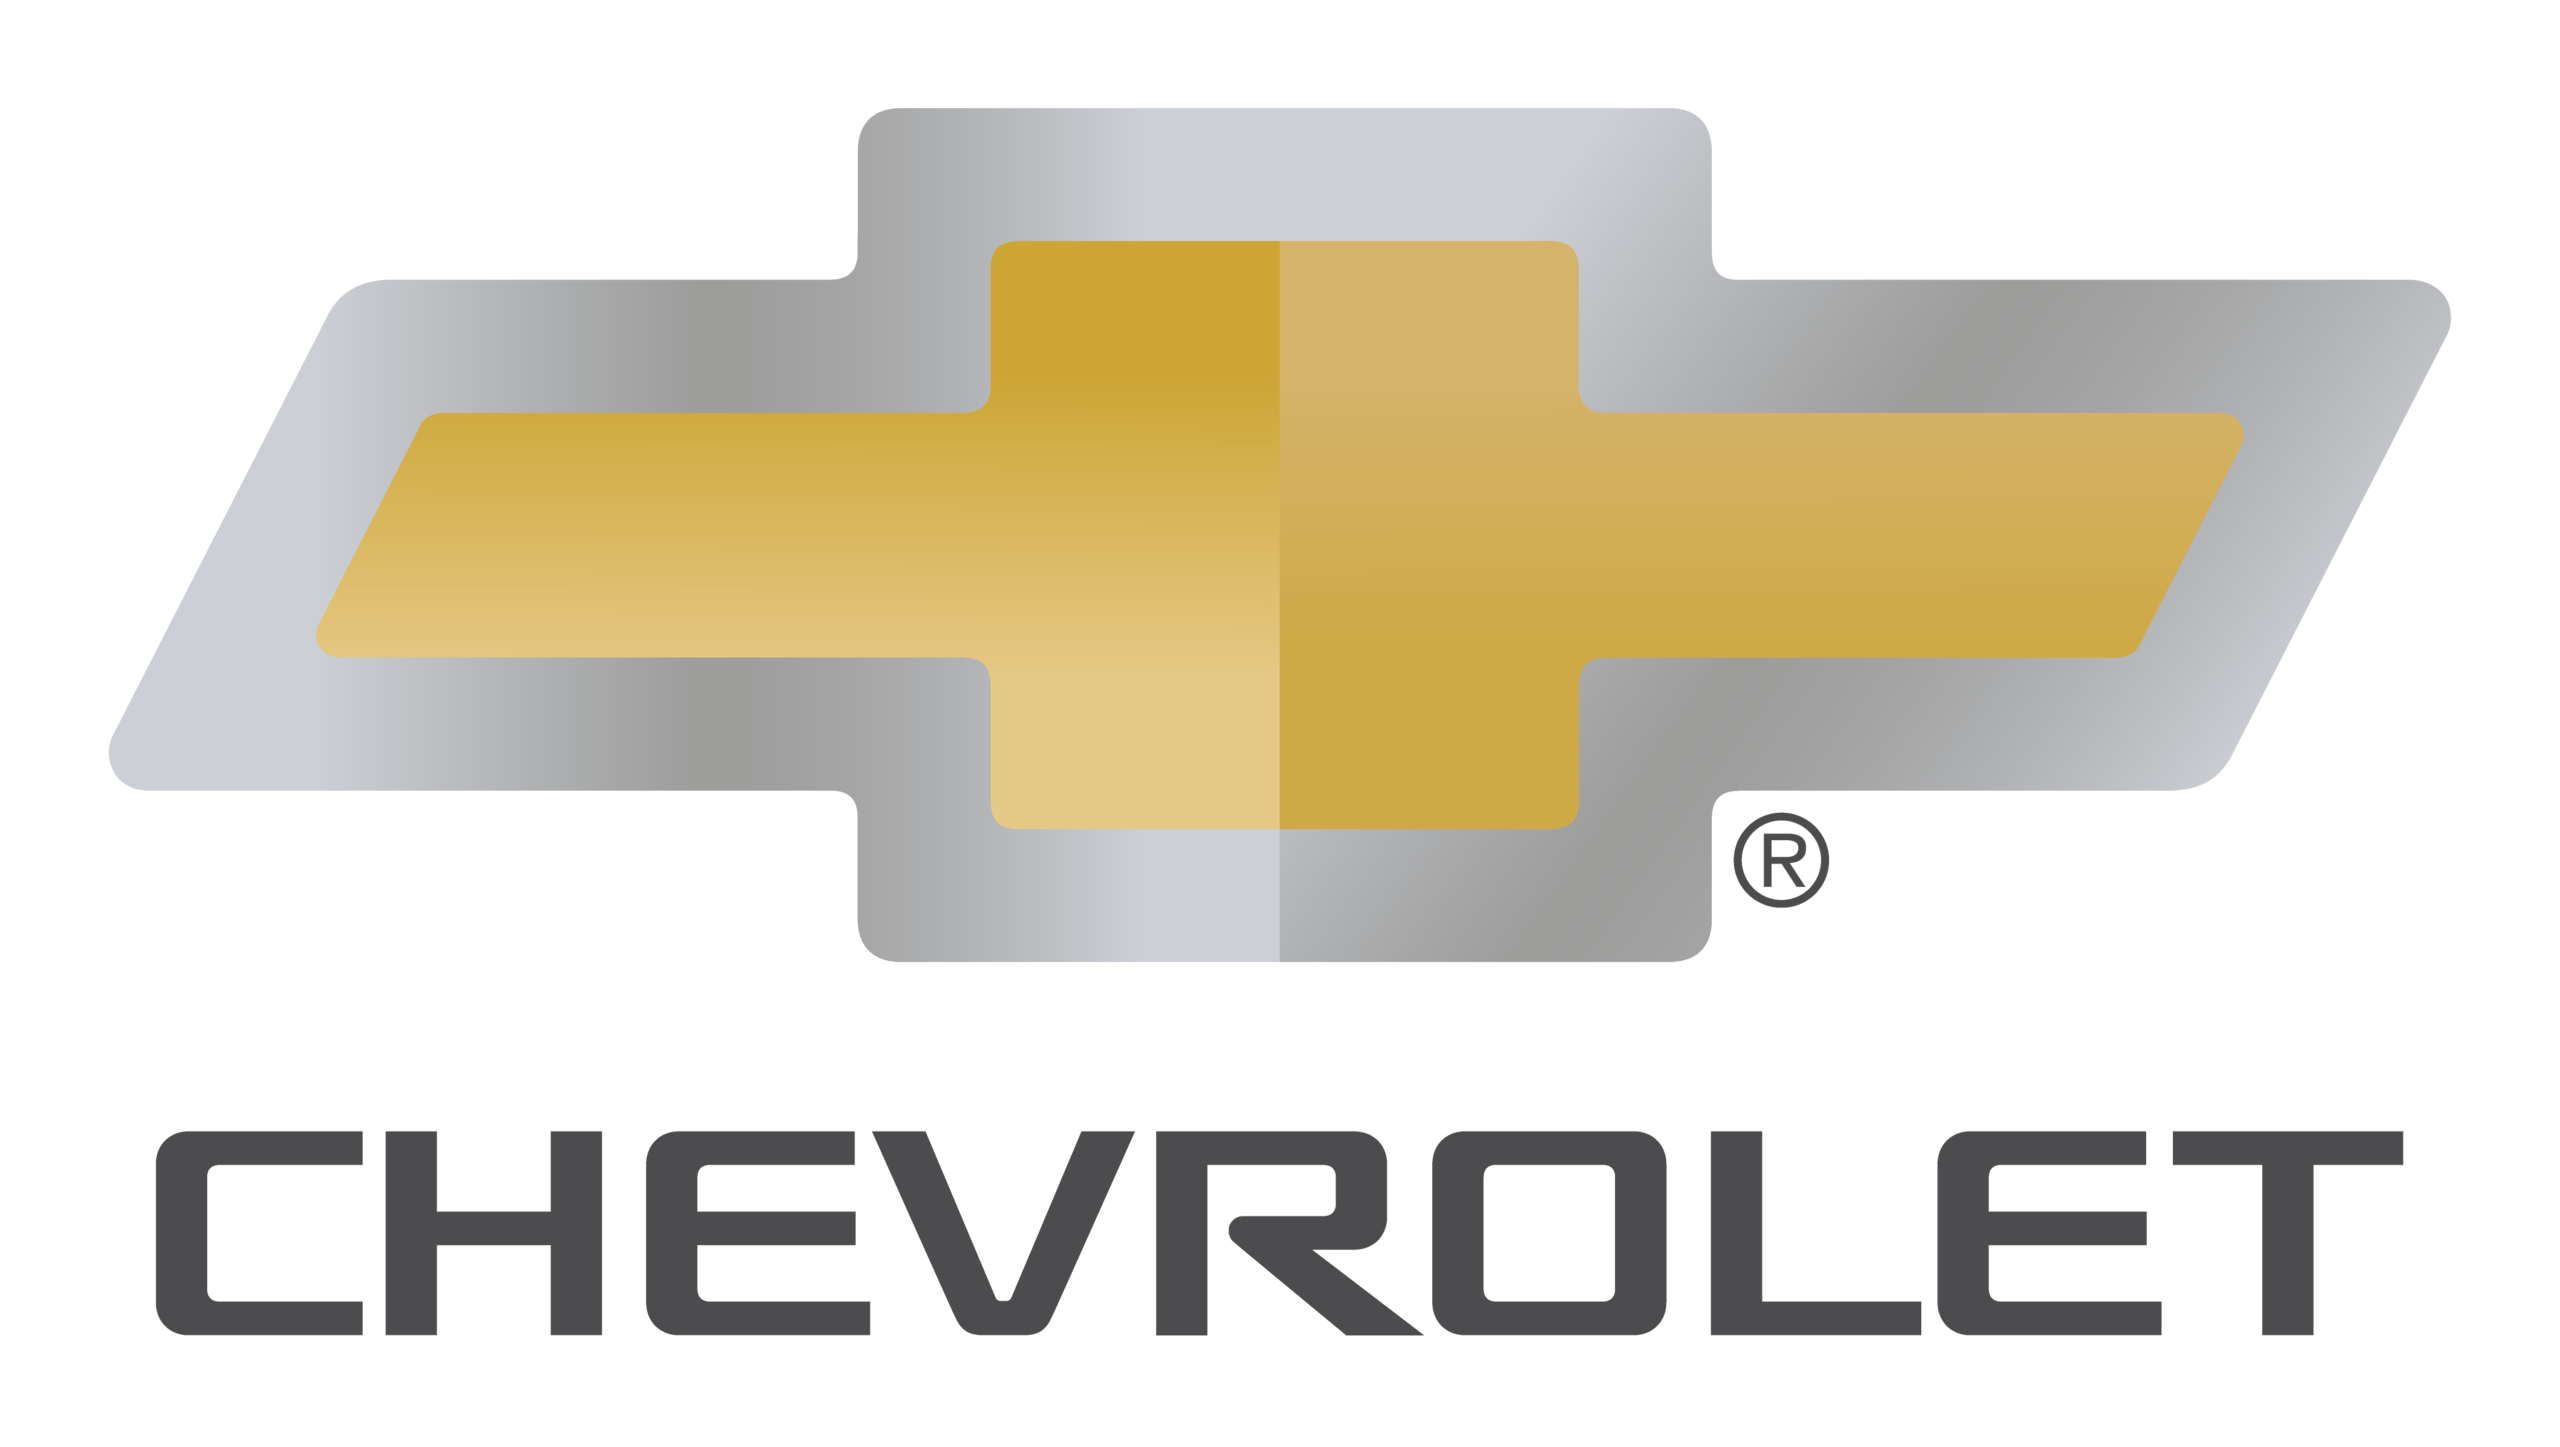 HD chevrolet logo wallpapers  Peakpx